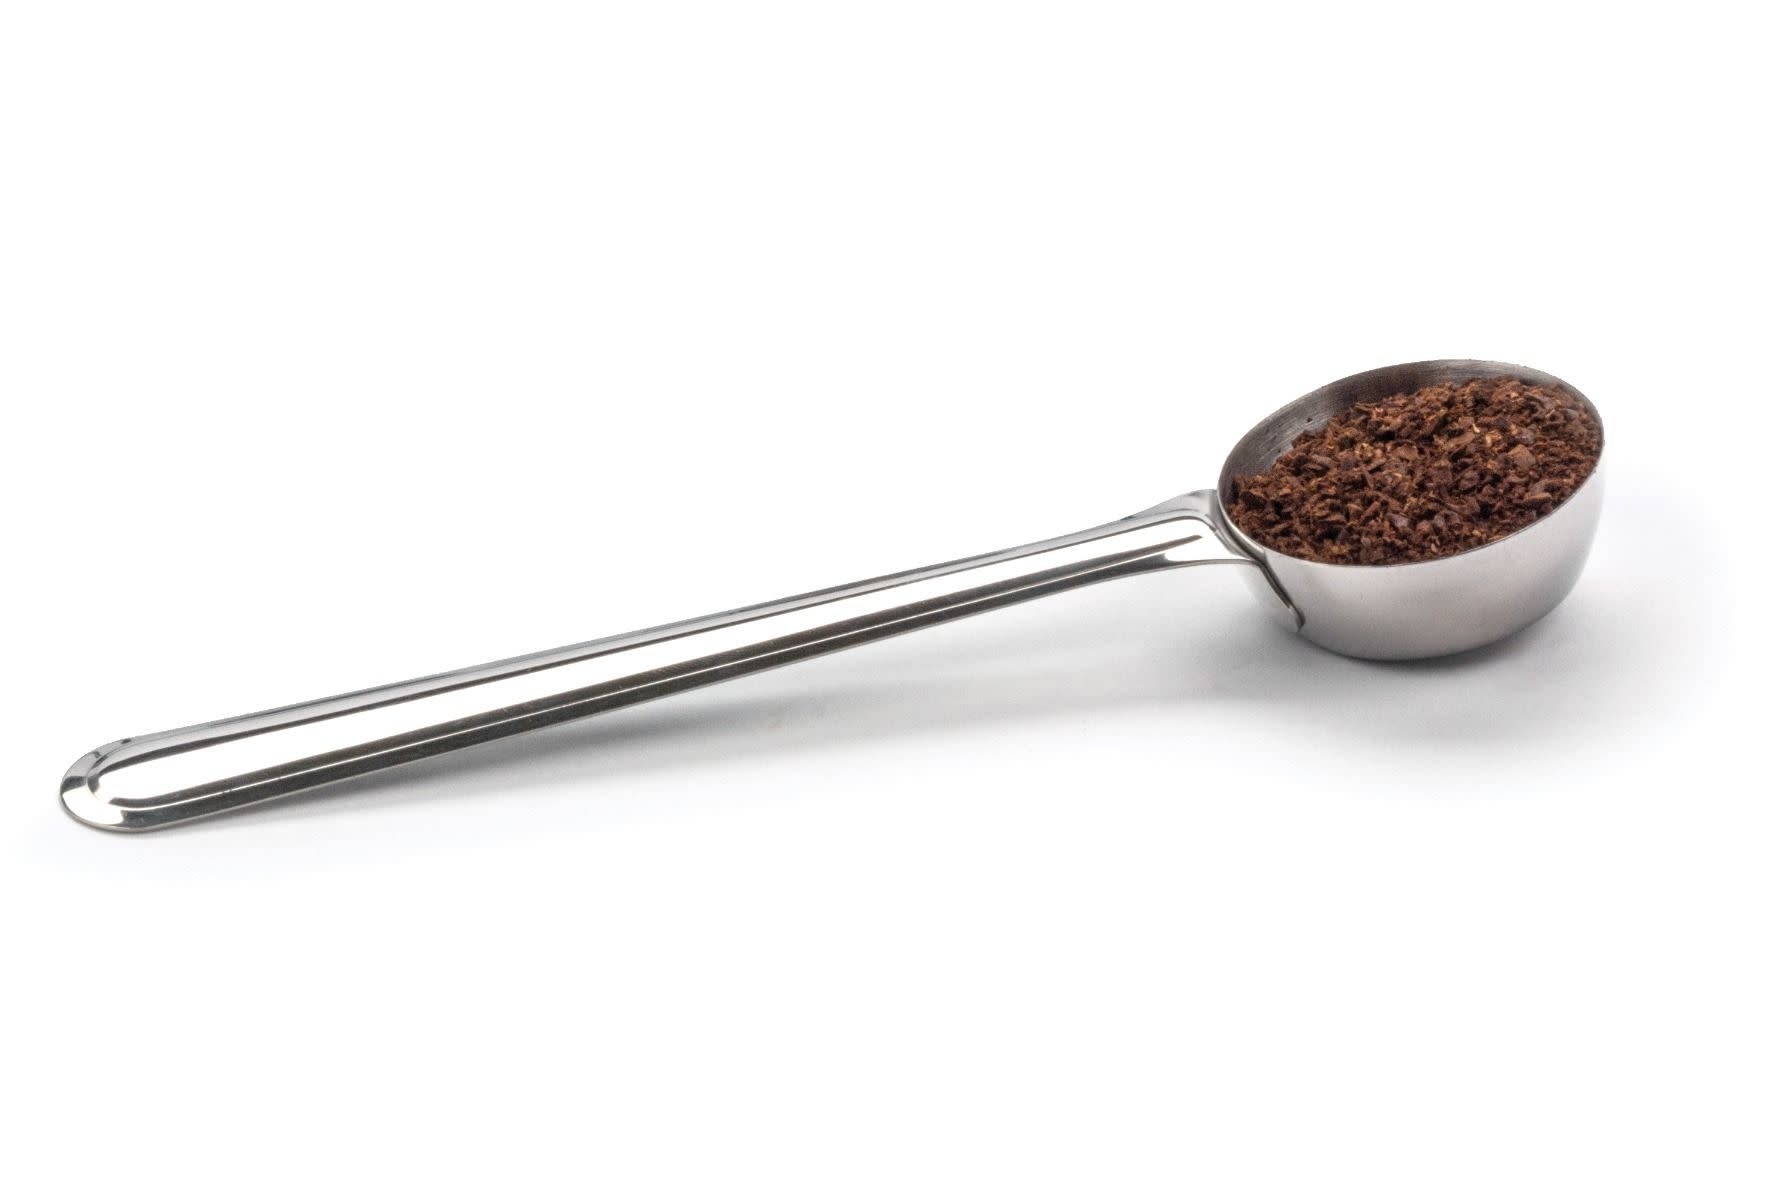 Coffee Measure Spoon Scoop Set of 2 Stainless Steel 1/8 Cup